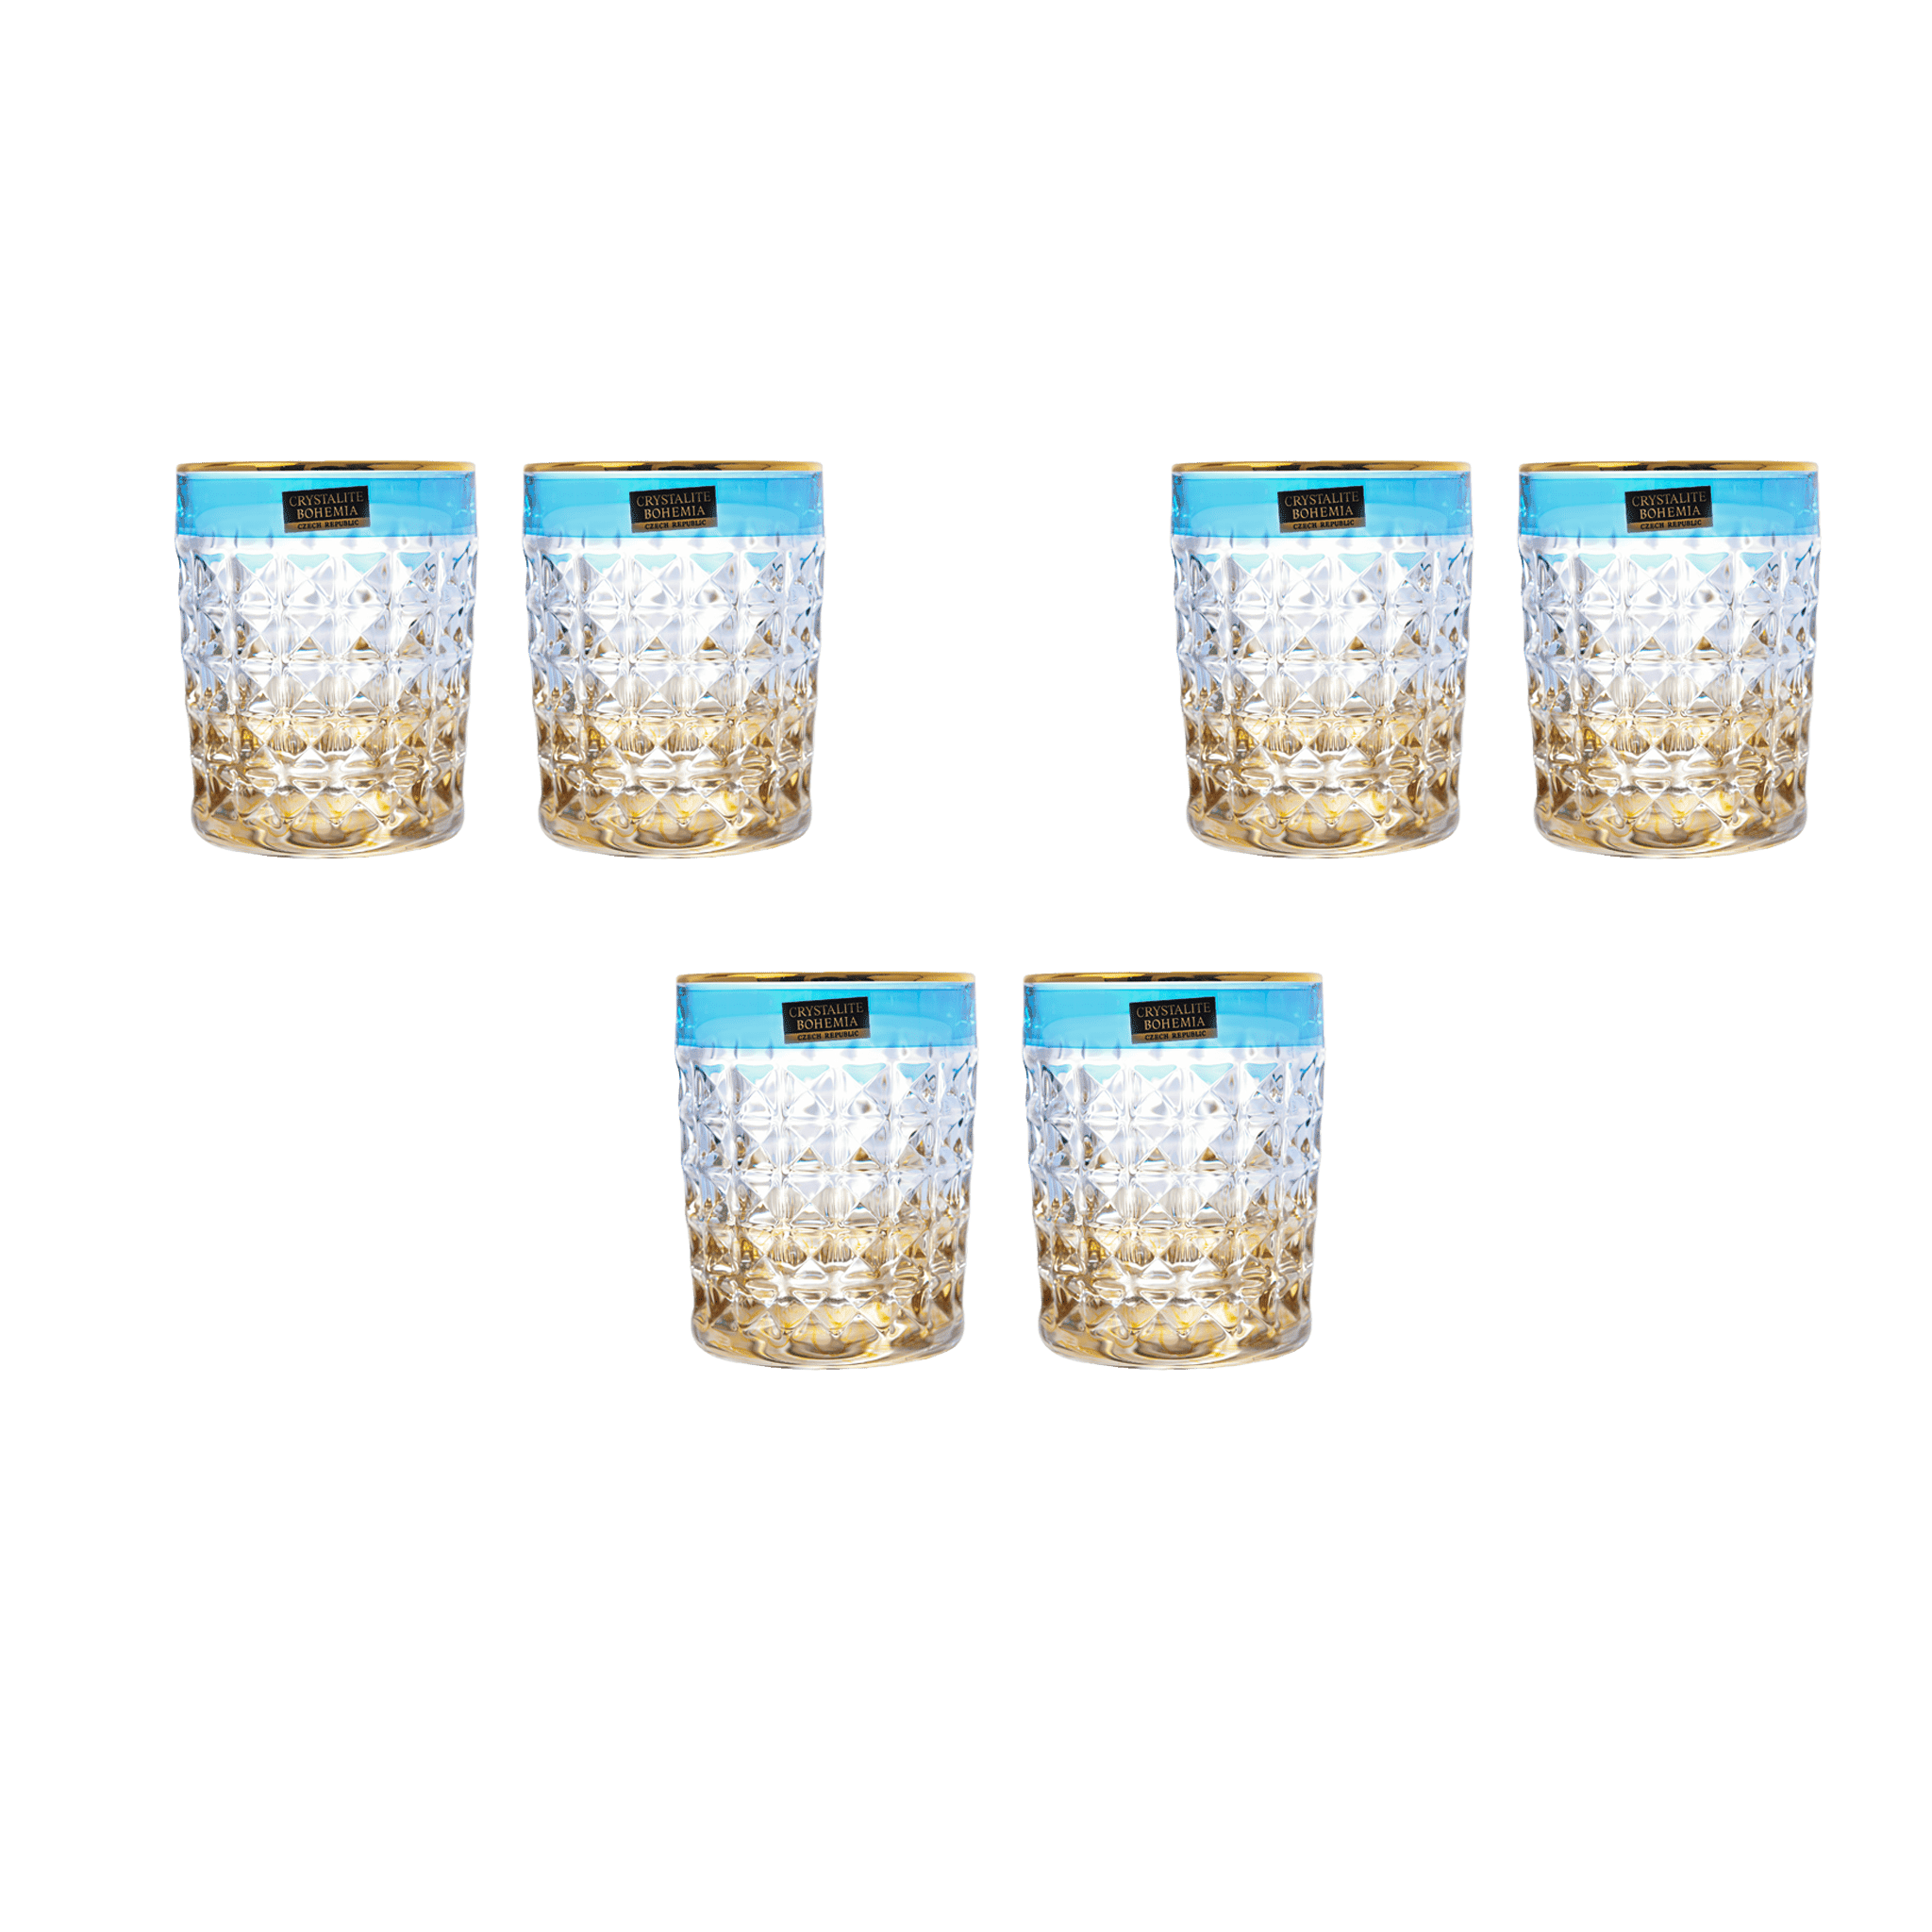 بوهيميا كريستال - طقم أكواب زجاج ألماس 6 قطع - أزرق وذهبي - 230 مل - 270006771